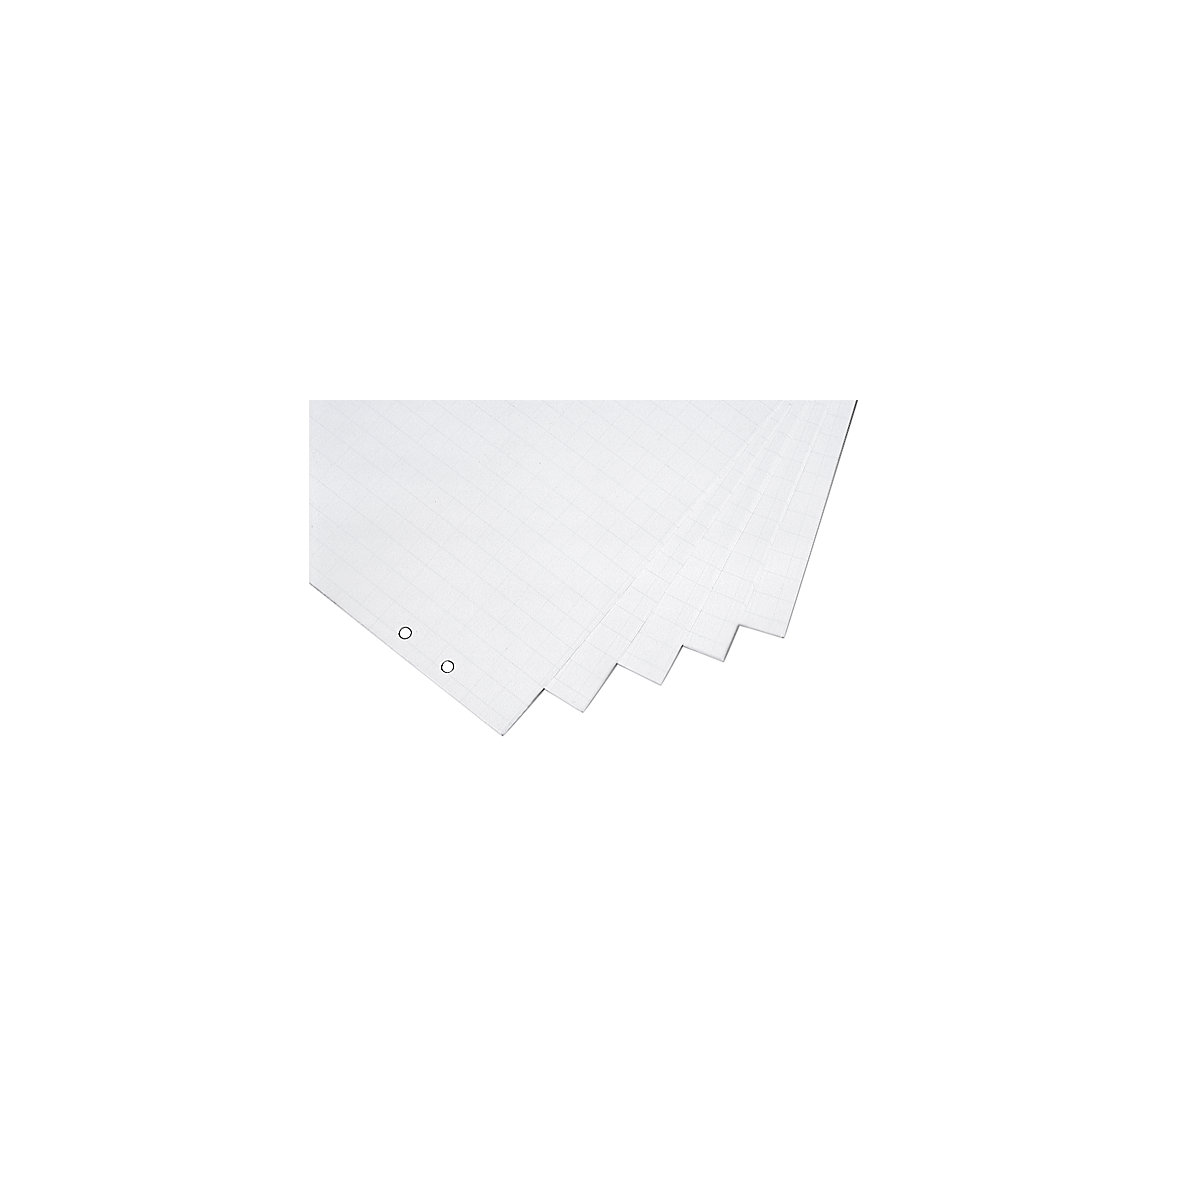 Flip-overpapier – magnetoplan, formaat 650 x 930 mm, opgerold, VE = 5 blokken à 20 vel-2